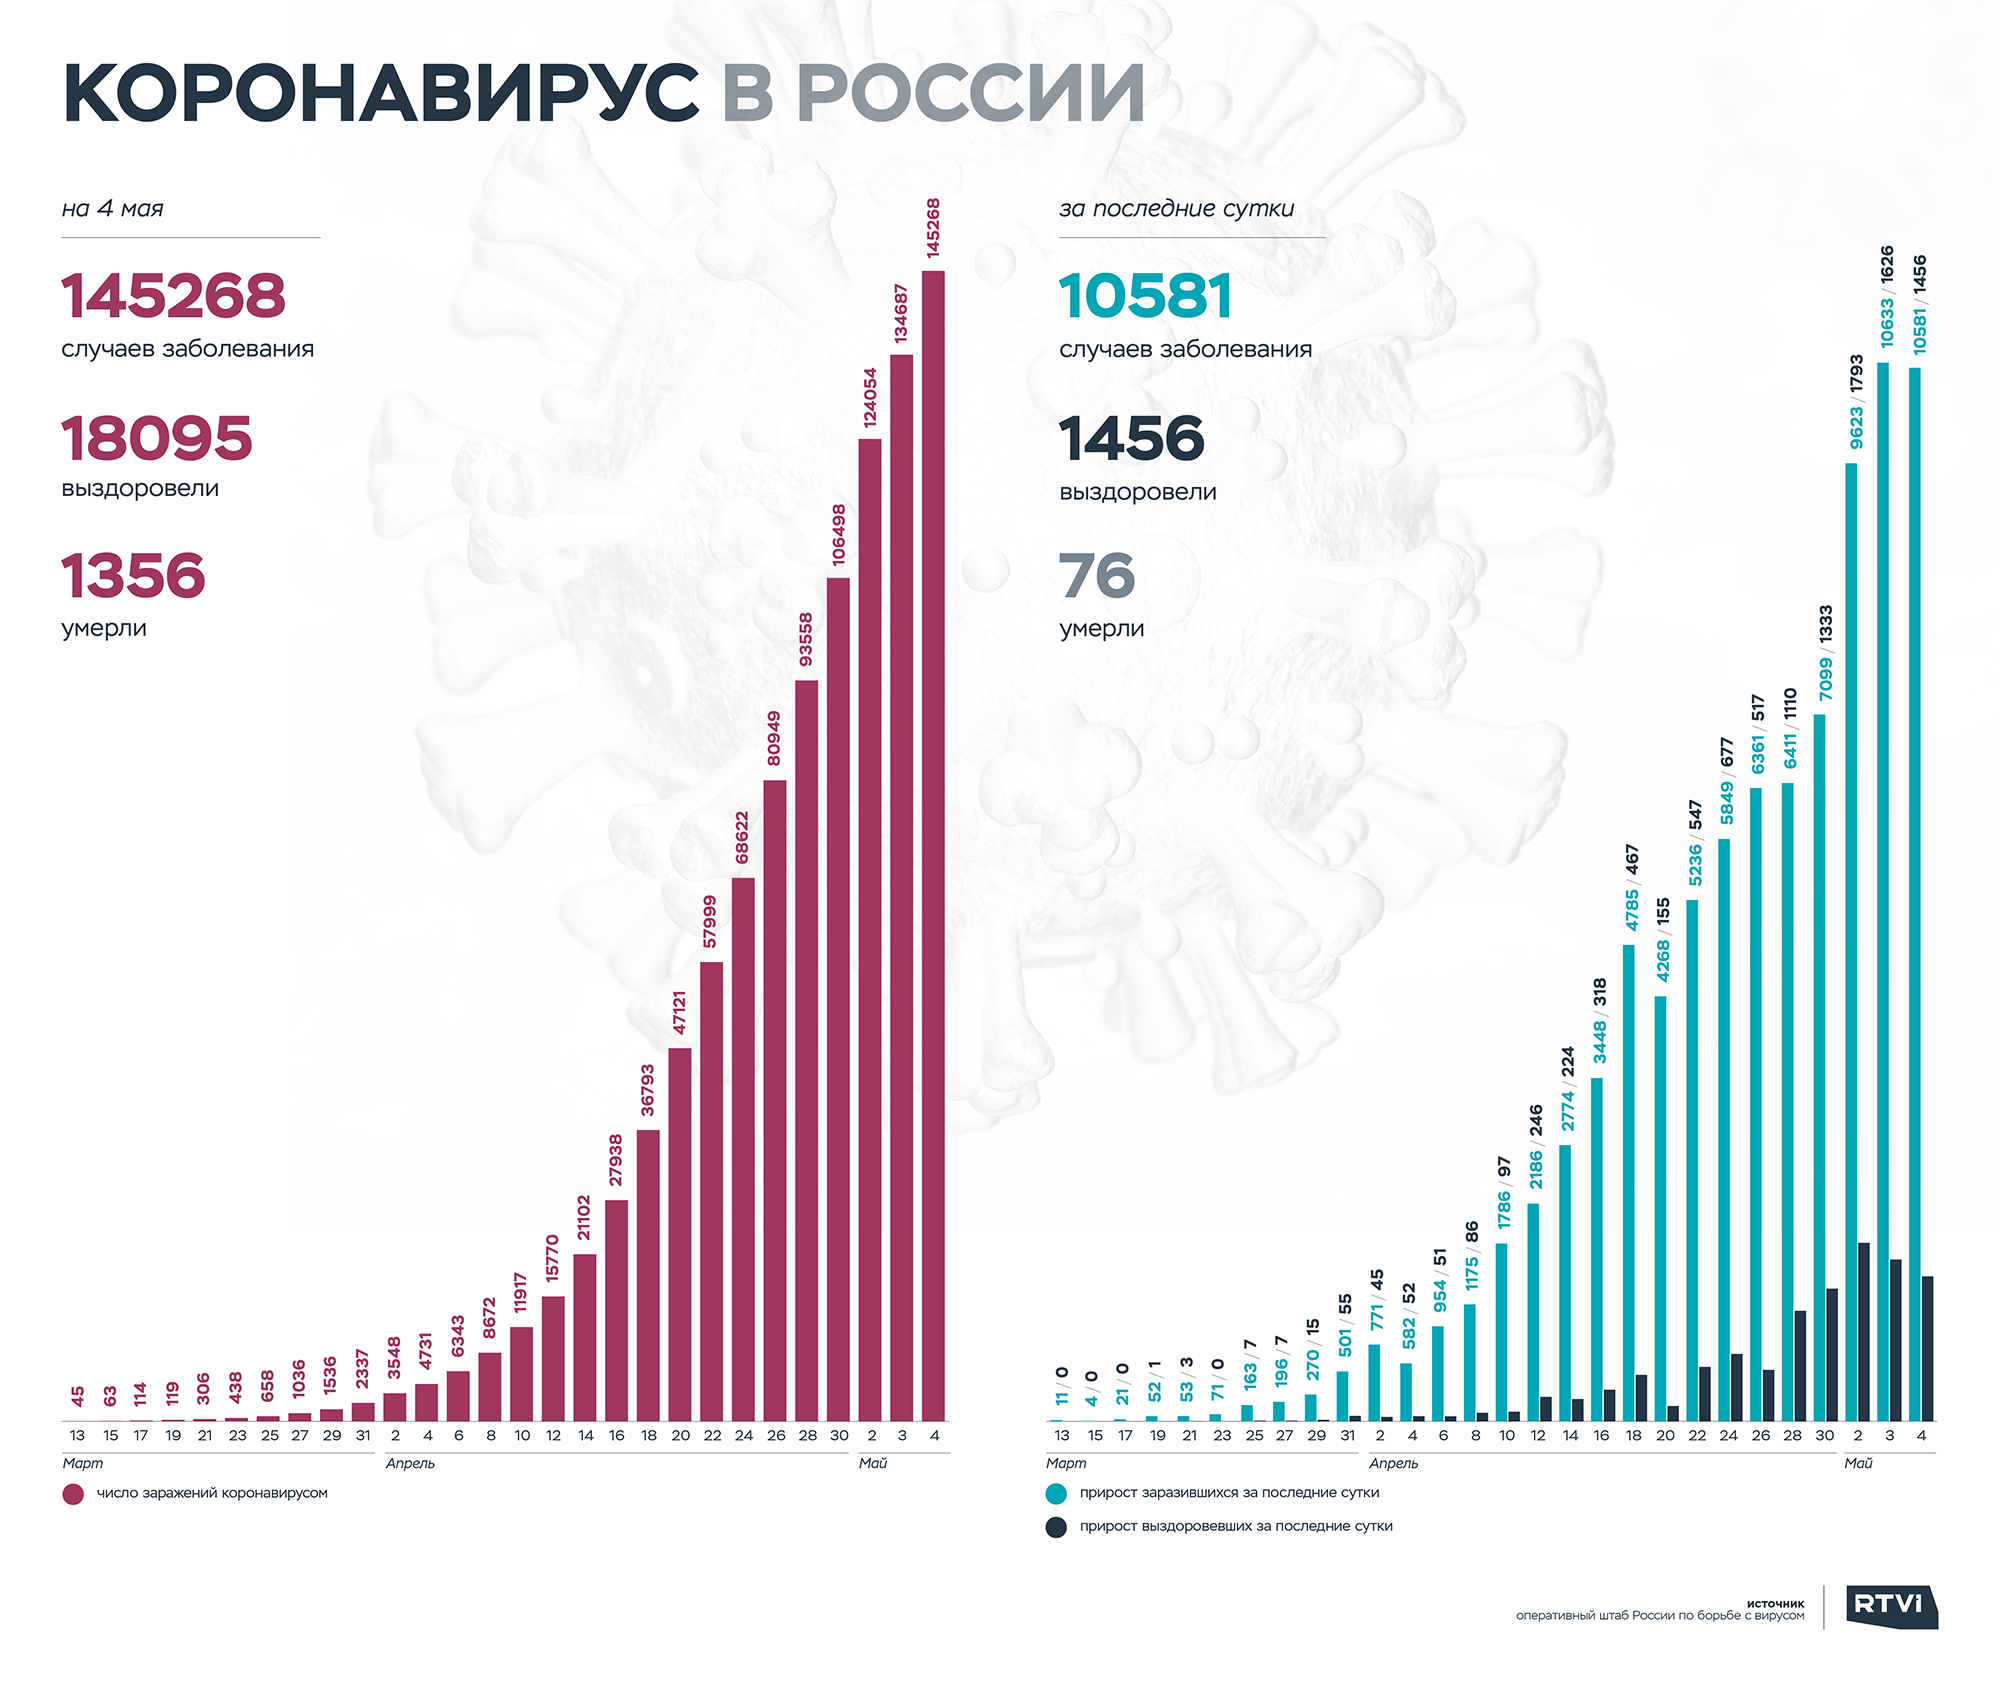 Сколько новых зараженных в россии